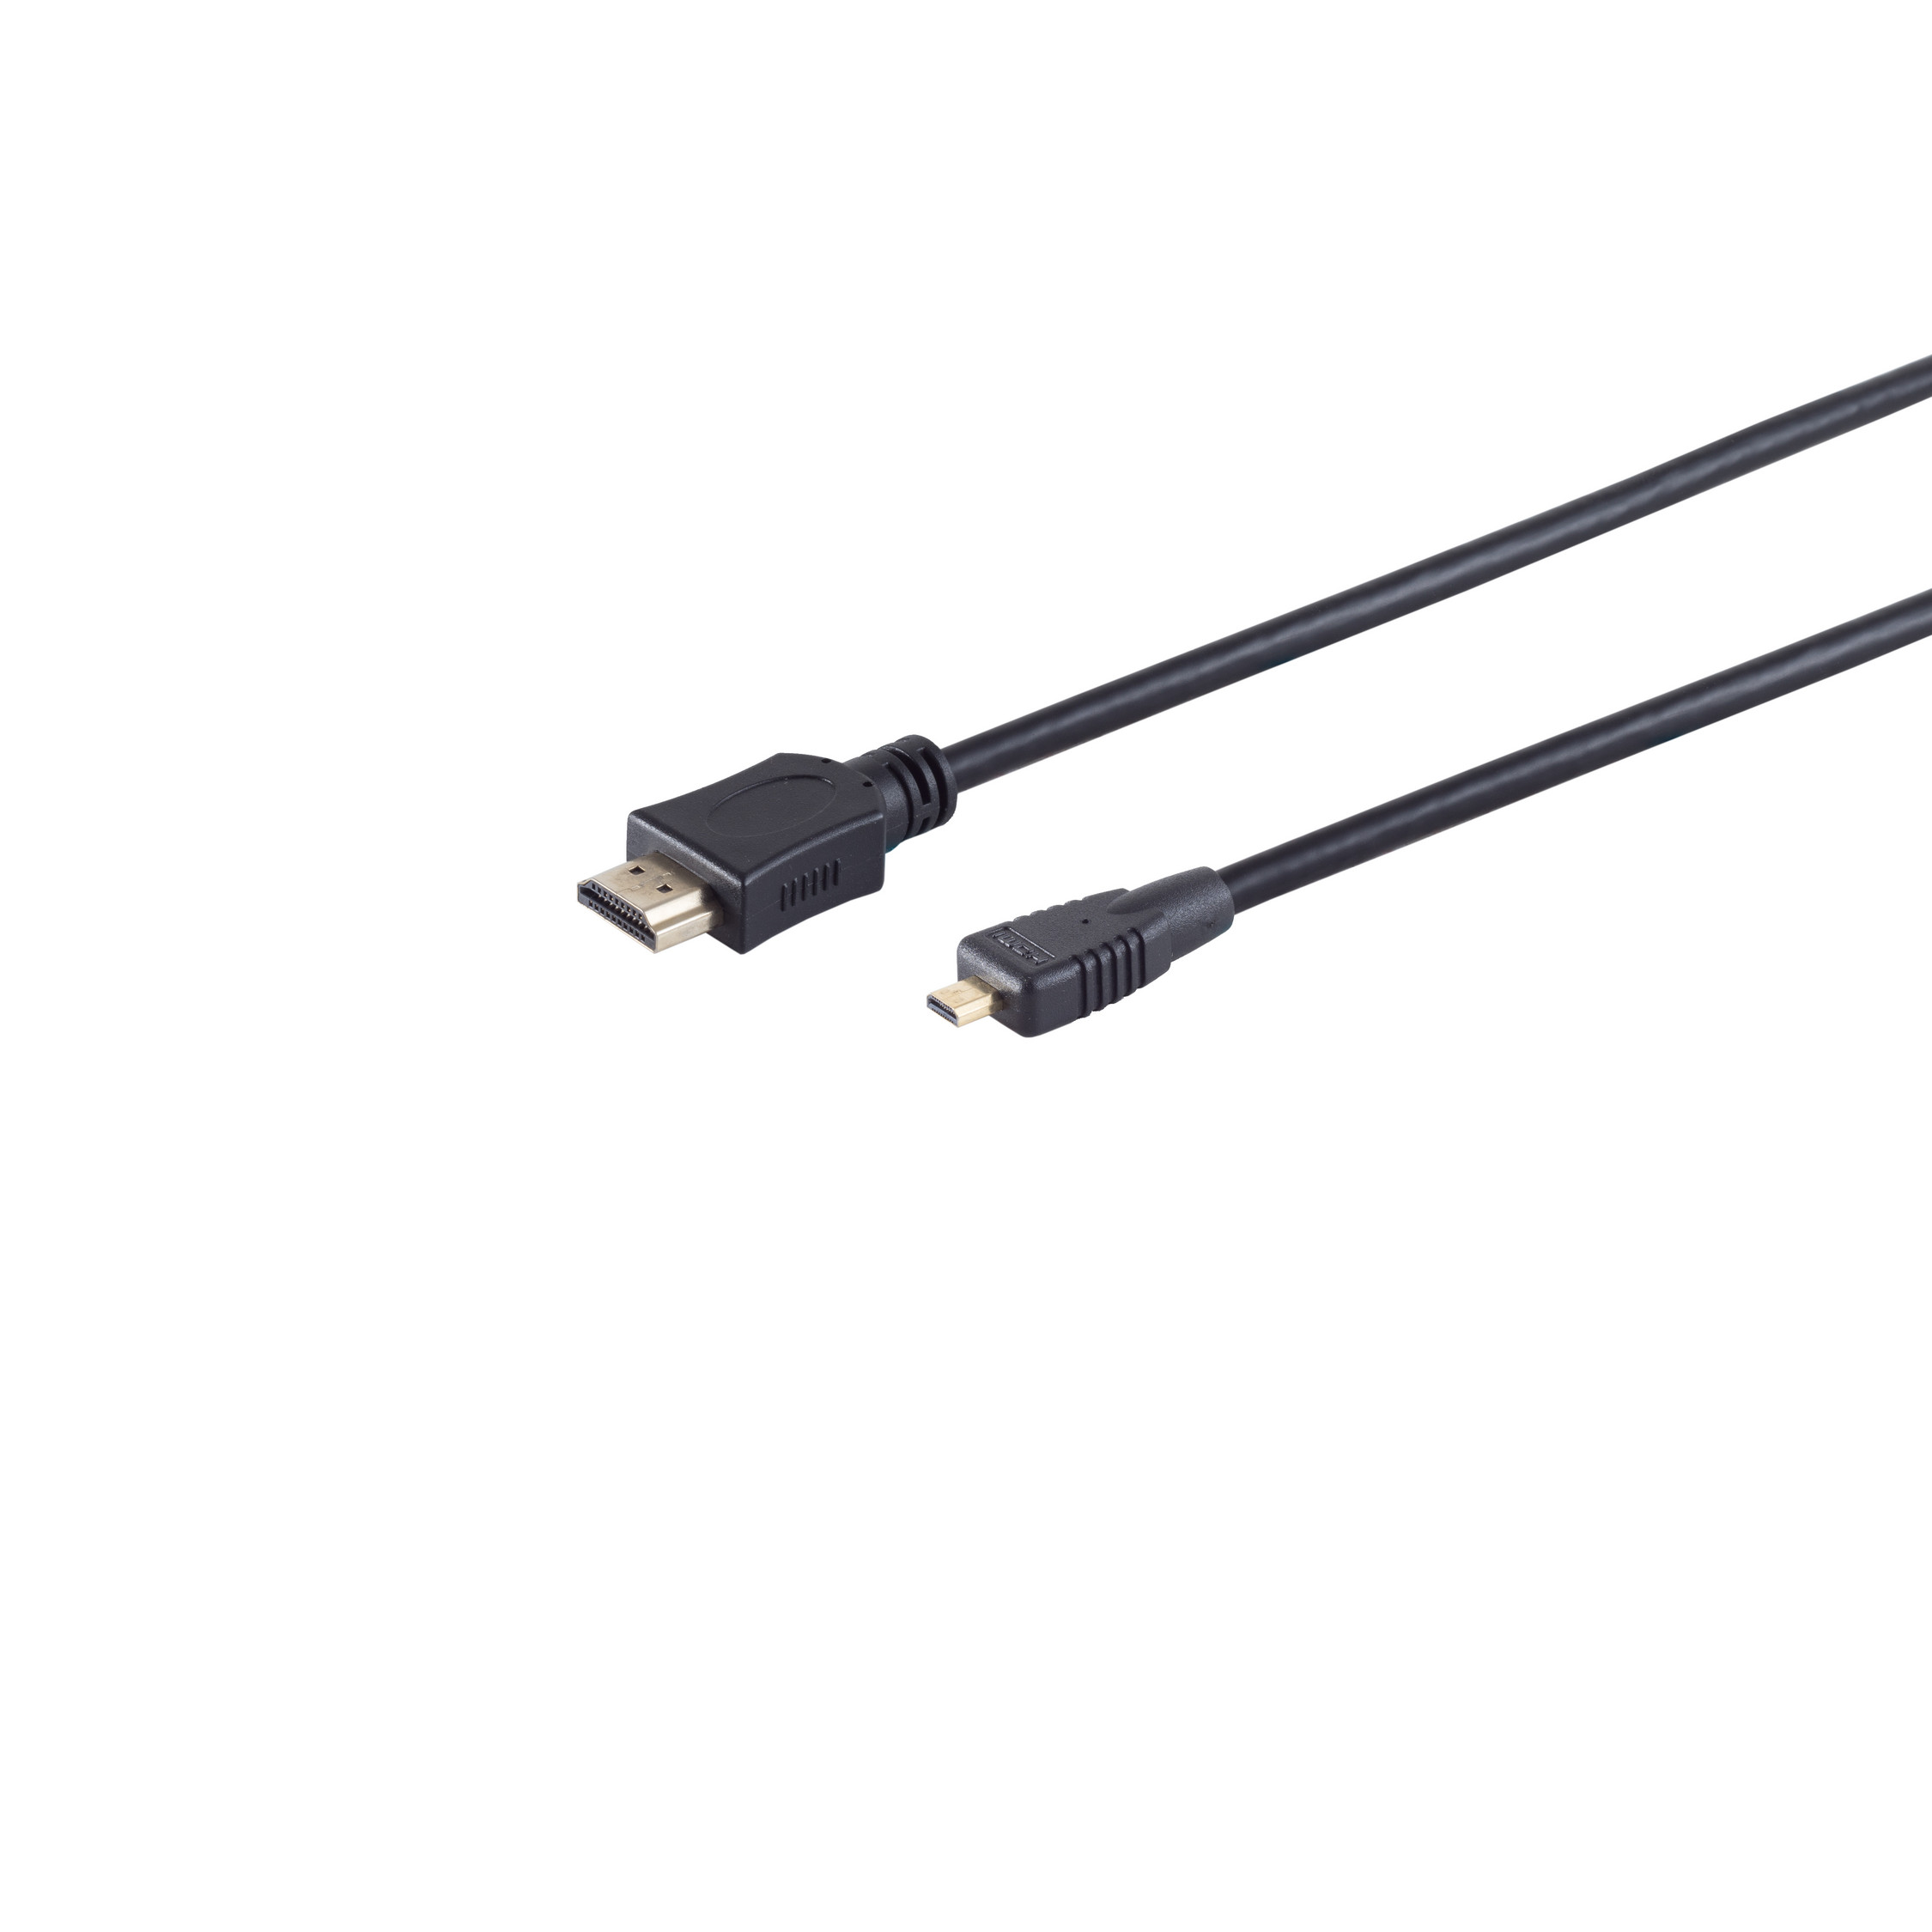 HDMI micro 0,5m HEAC CONNECTIVITY verg A-Stecker/HDMI MAXIMUM D-Stecker S/CONN HDMI Kabel